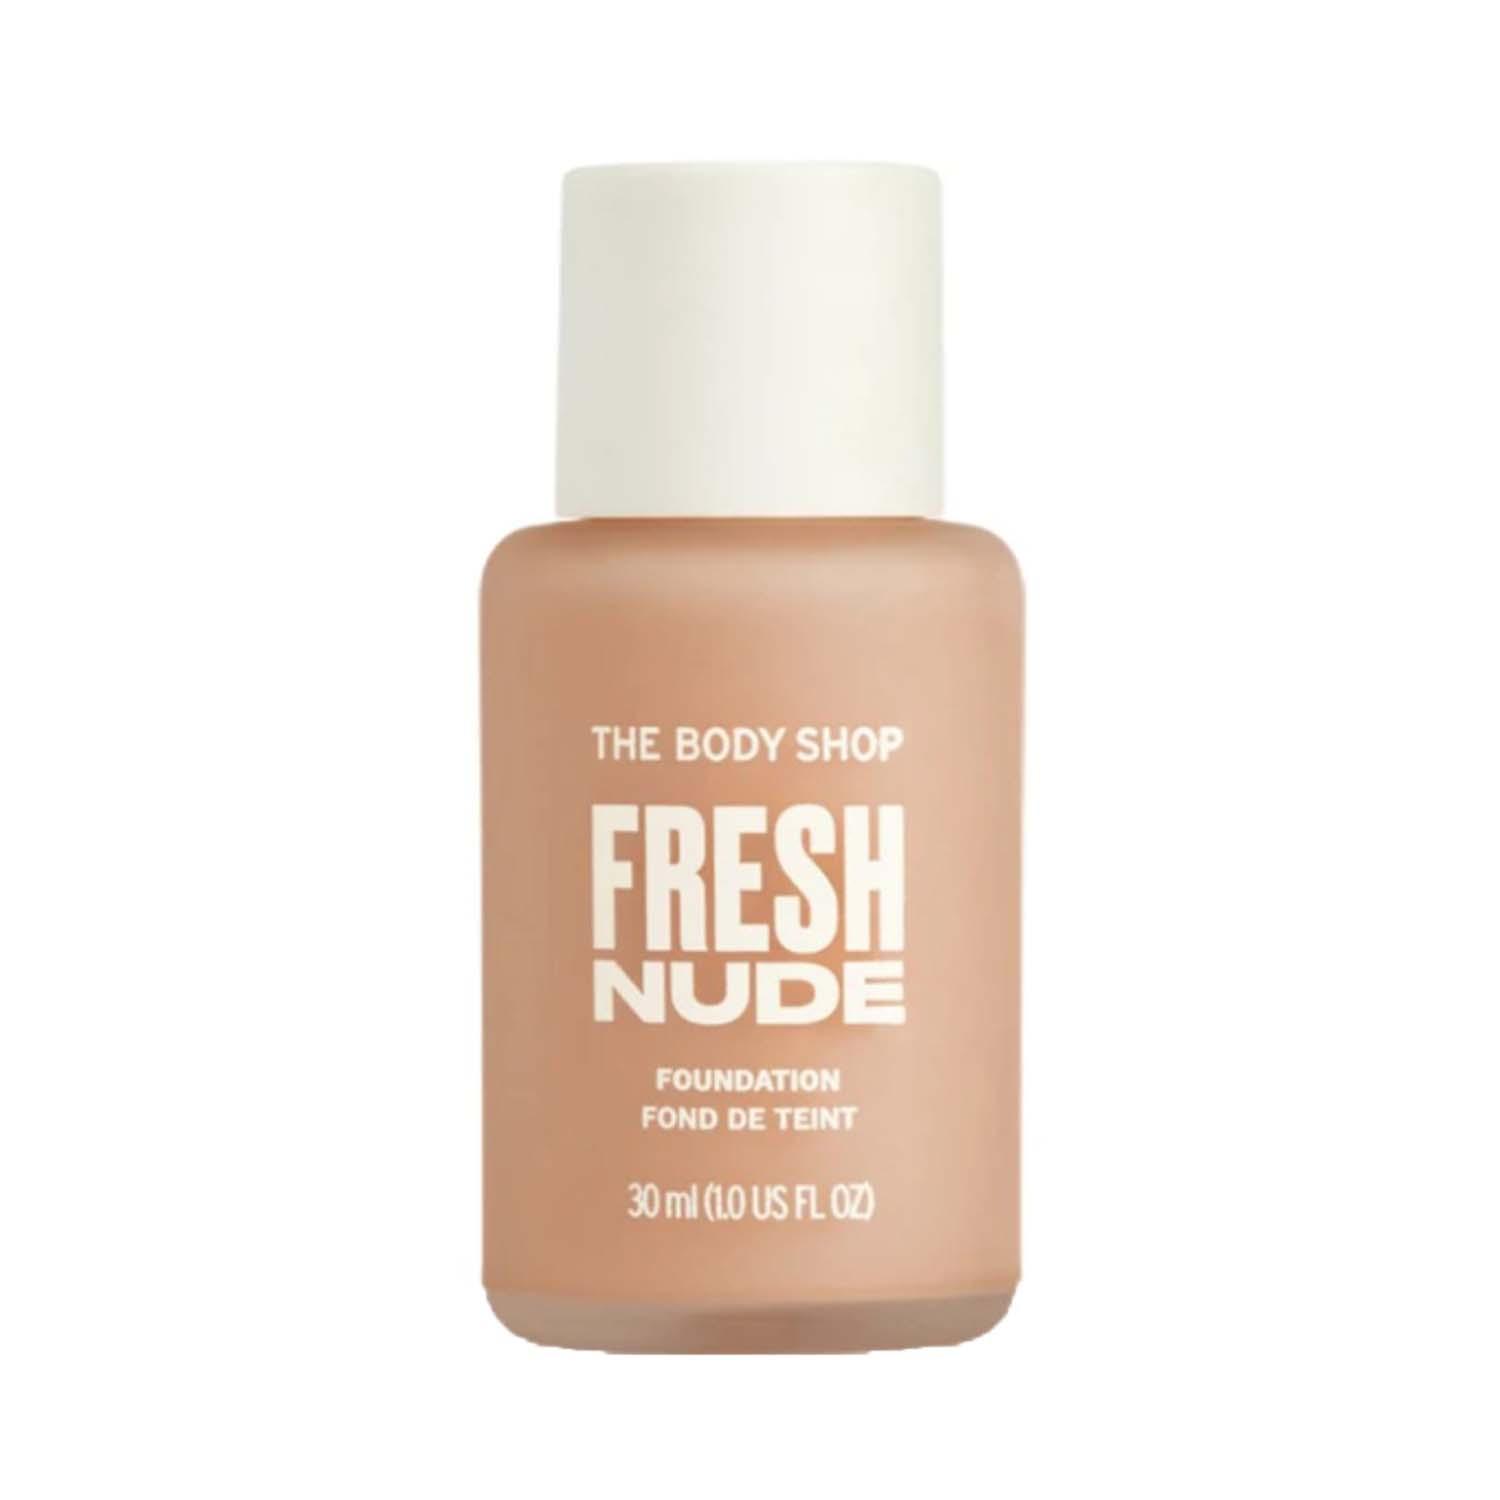 The Body Shop | The Body Shop Fresh Nude Foundation - 1C Medium (30 ml)